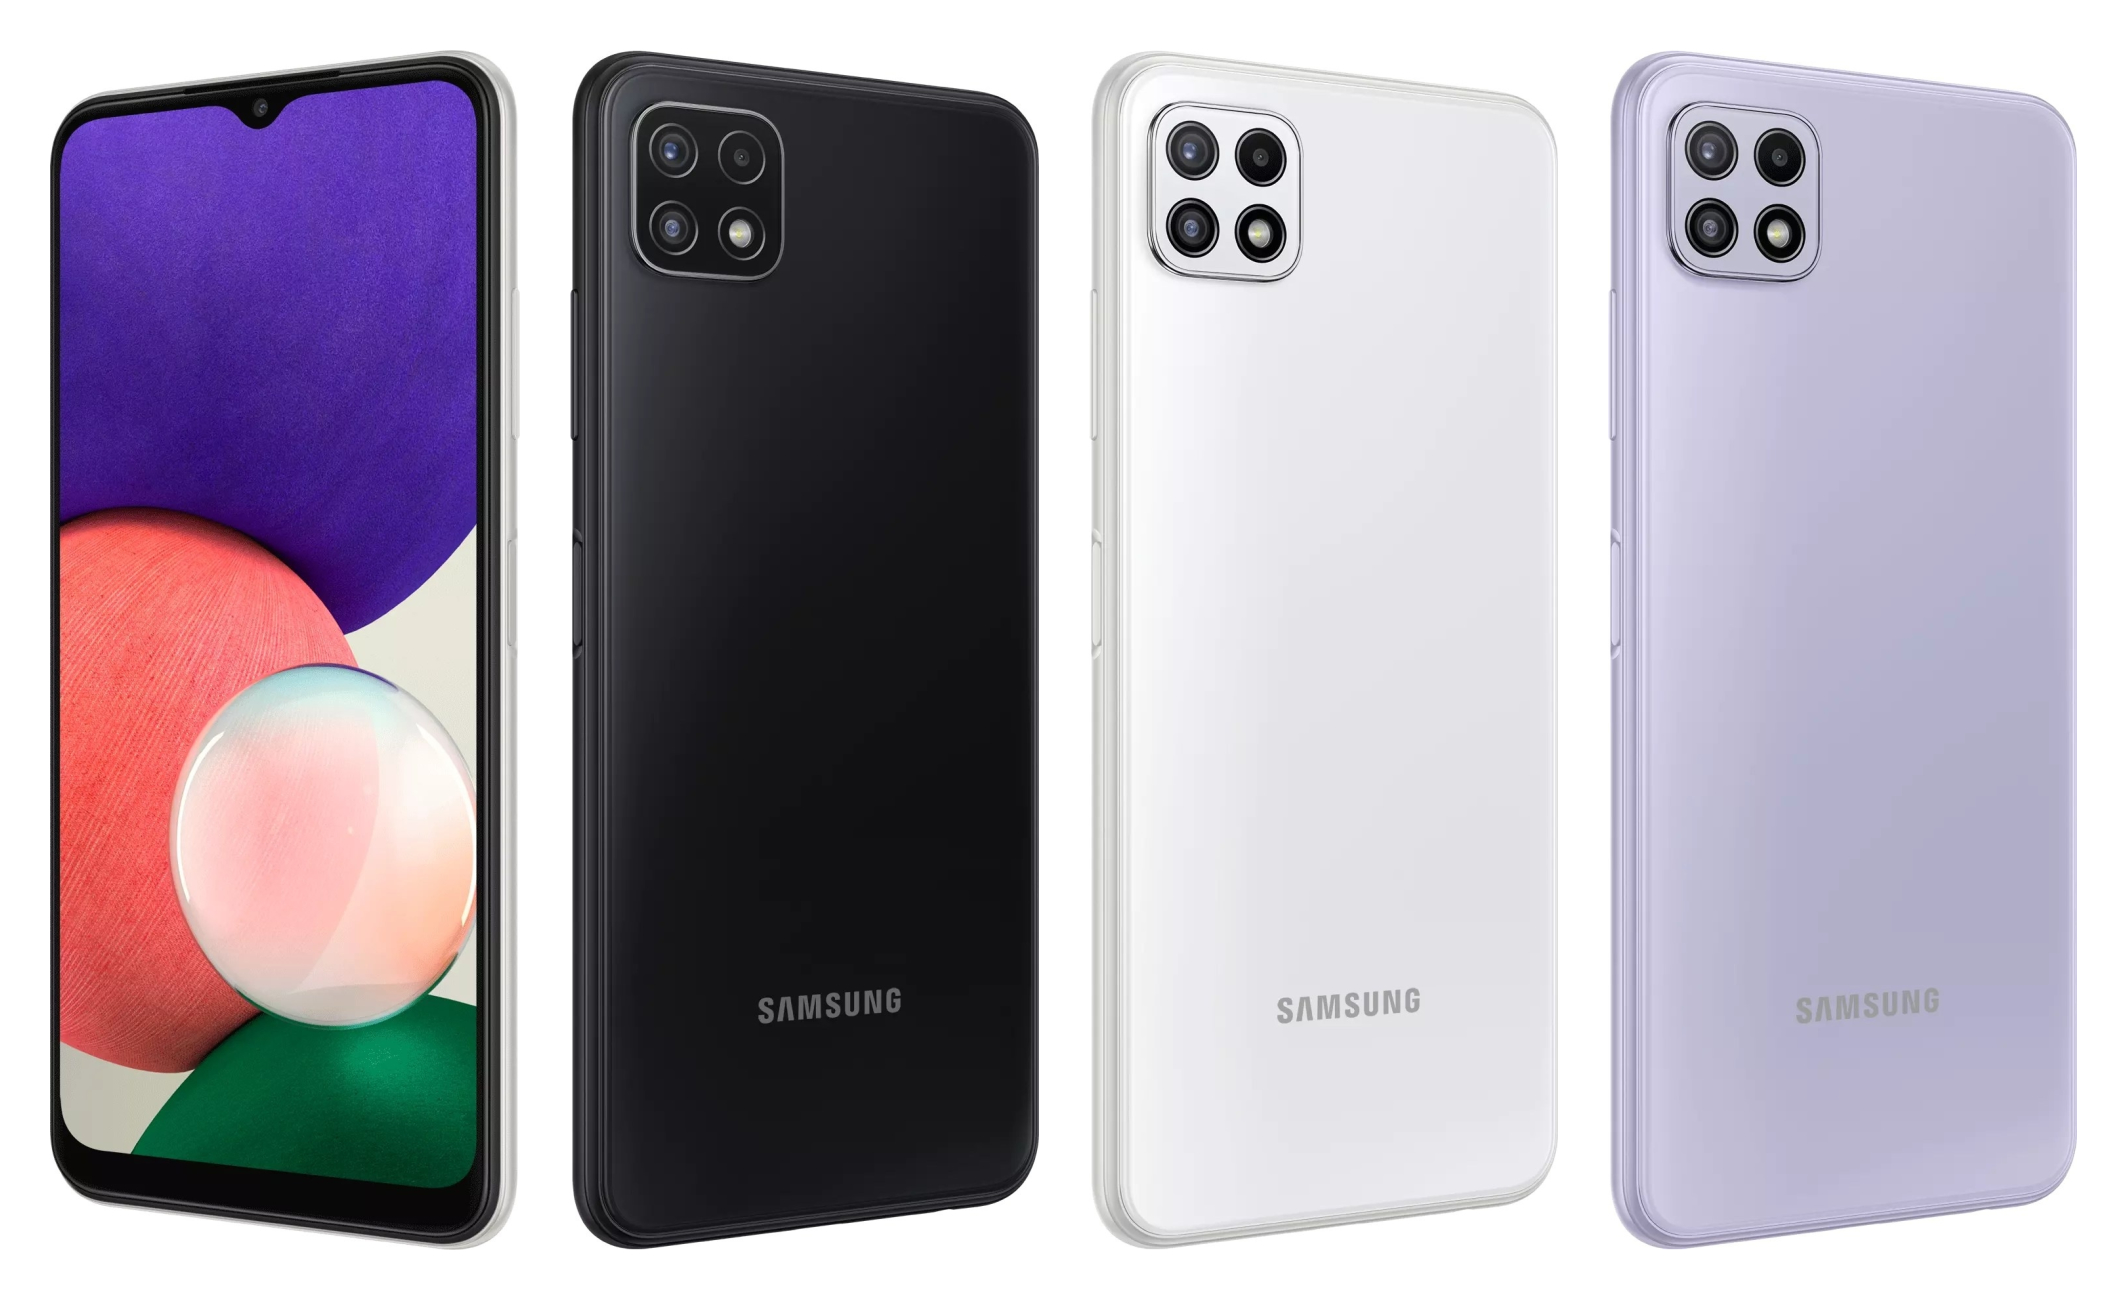 Samsungin 229 euron 5G-älypuhelimen Galaxy A22 5G:n ennakkomyynti alkoi